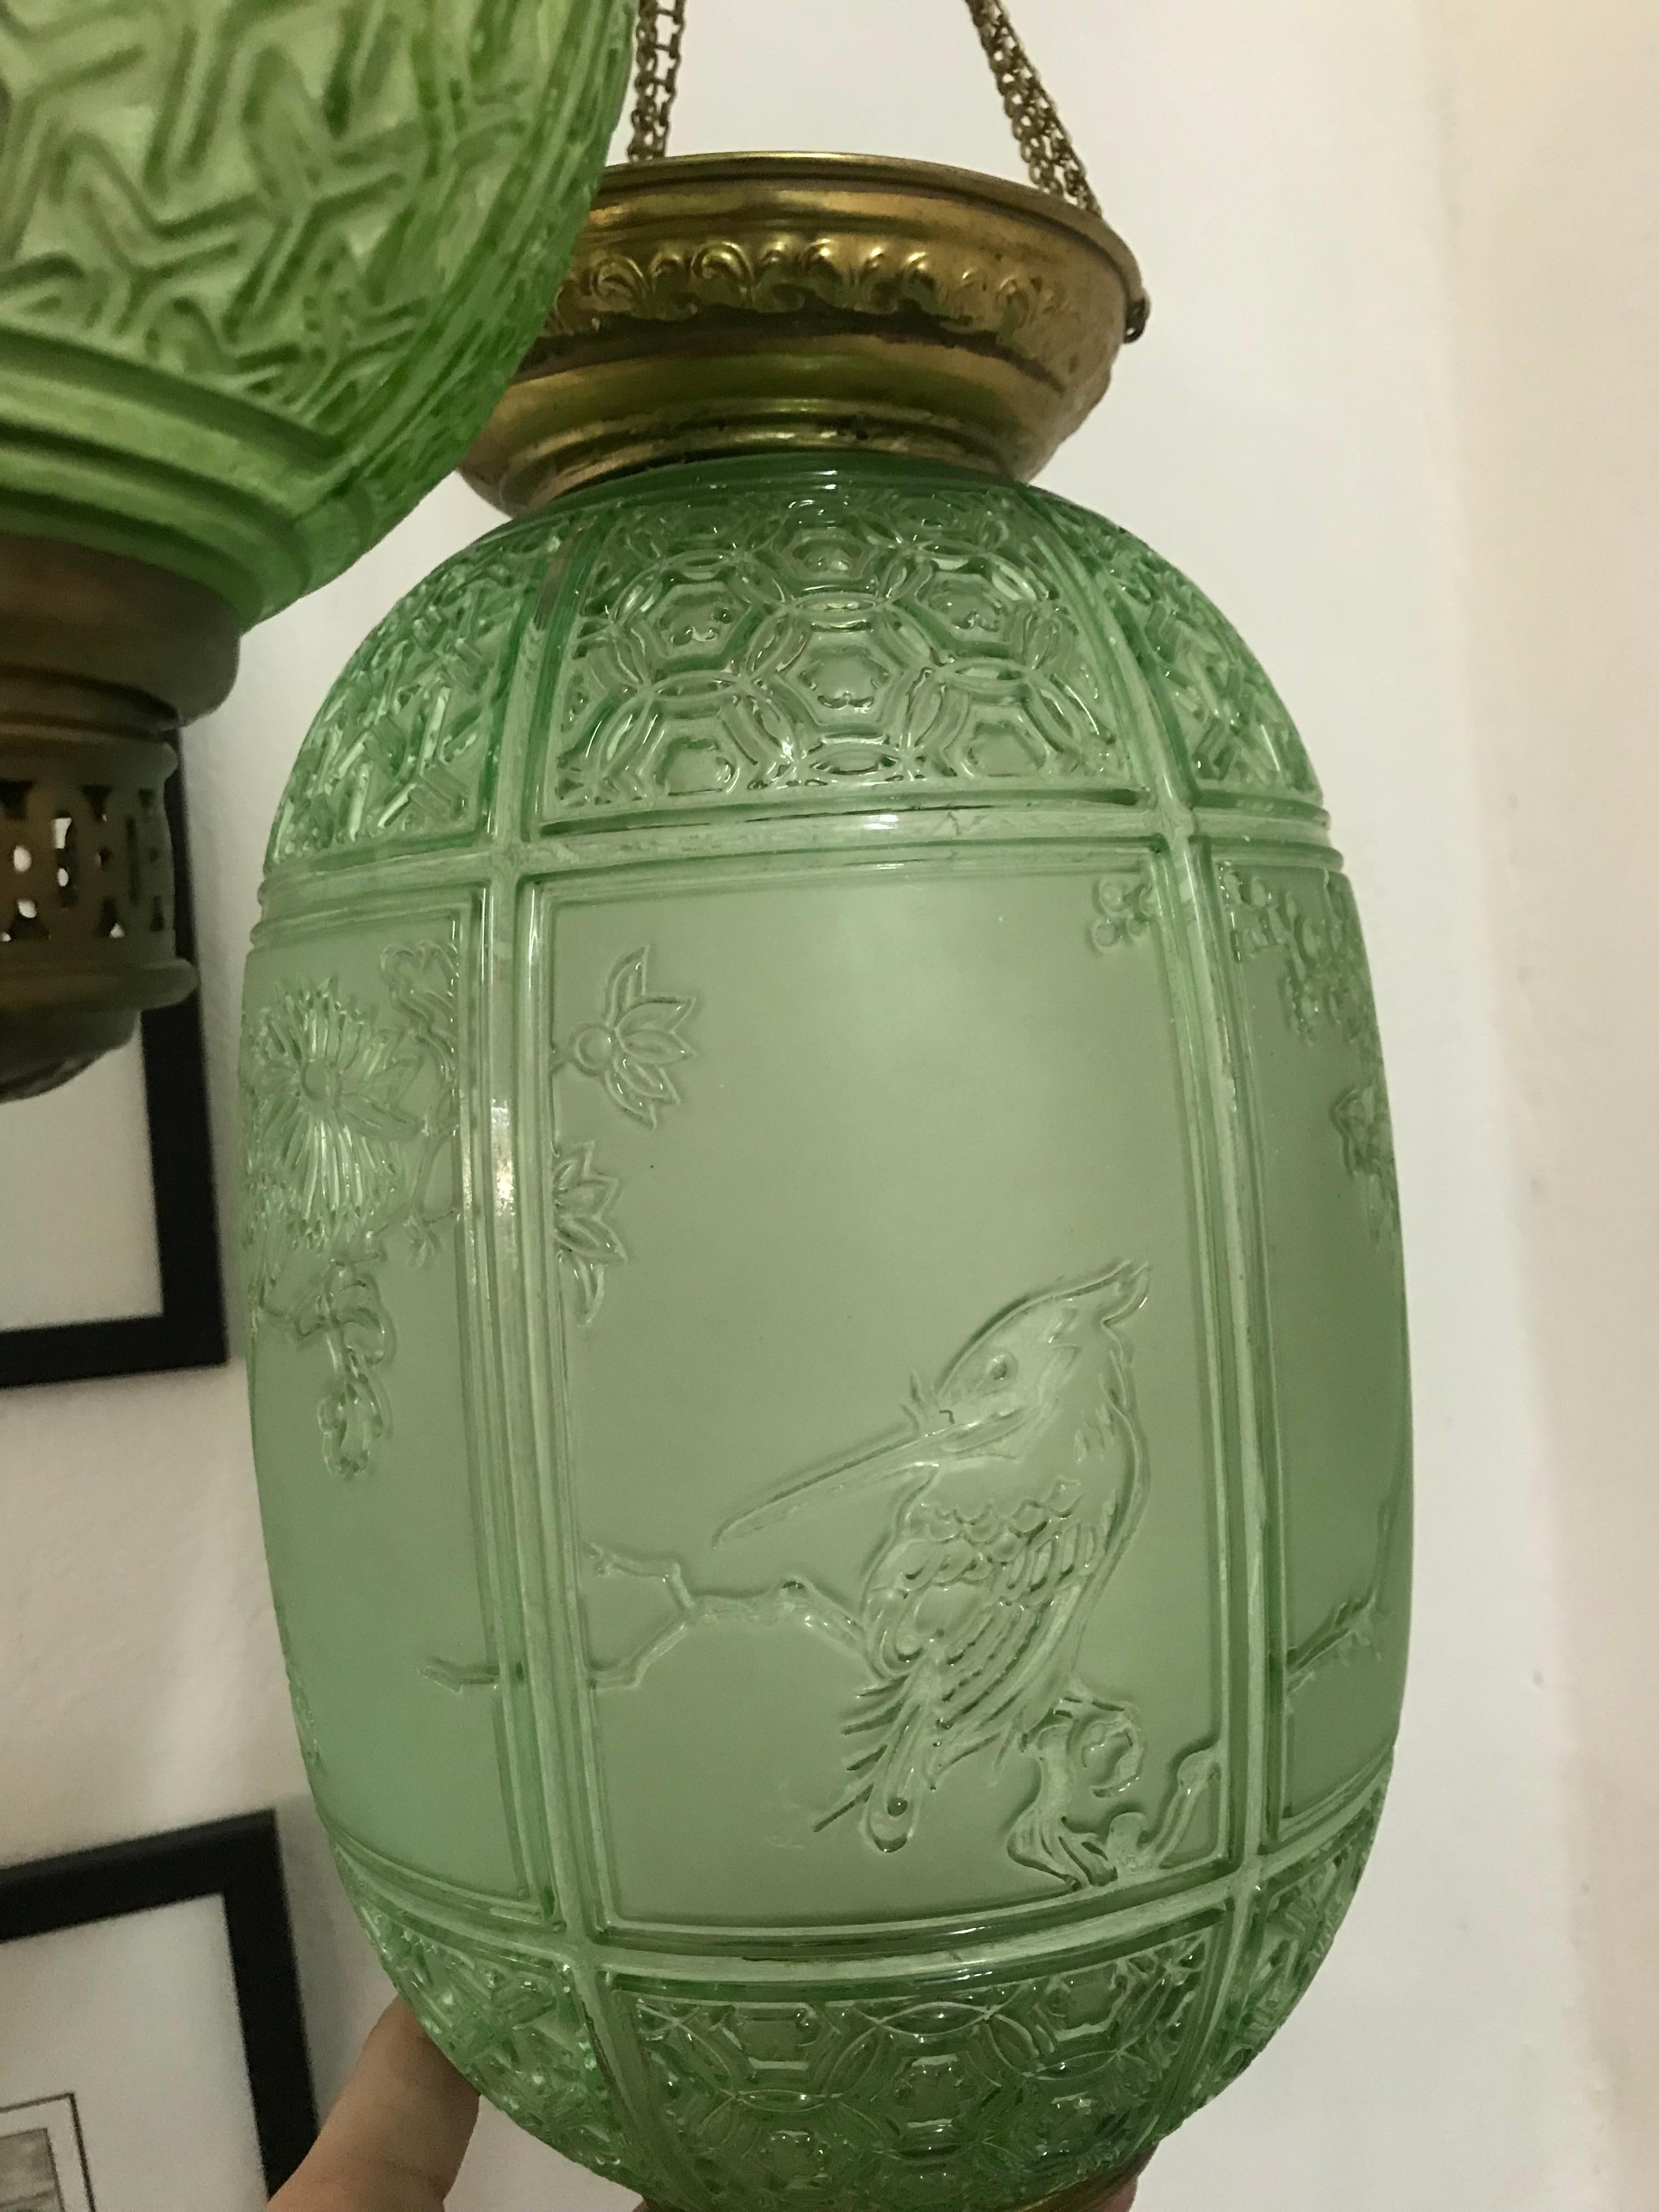 Art Nouveau Candle Lanterns by Baccarat France, Depicting Birds 